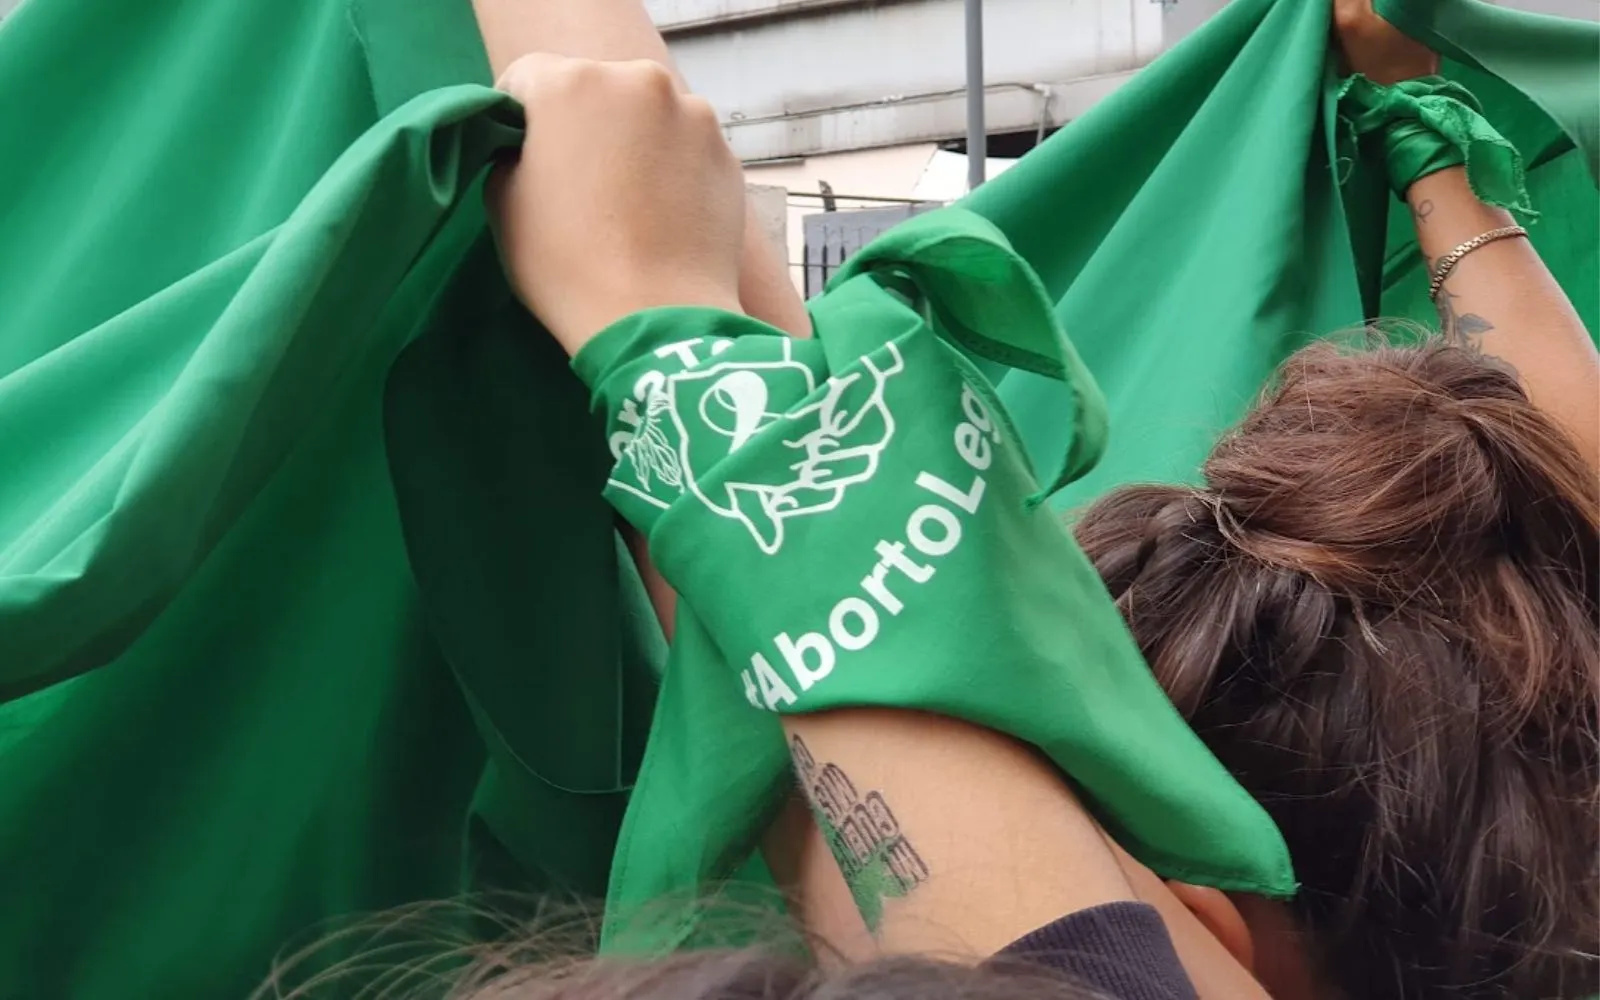 Pañuelo verde característico de feministas a favor del aborto.?w=200&h=150